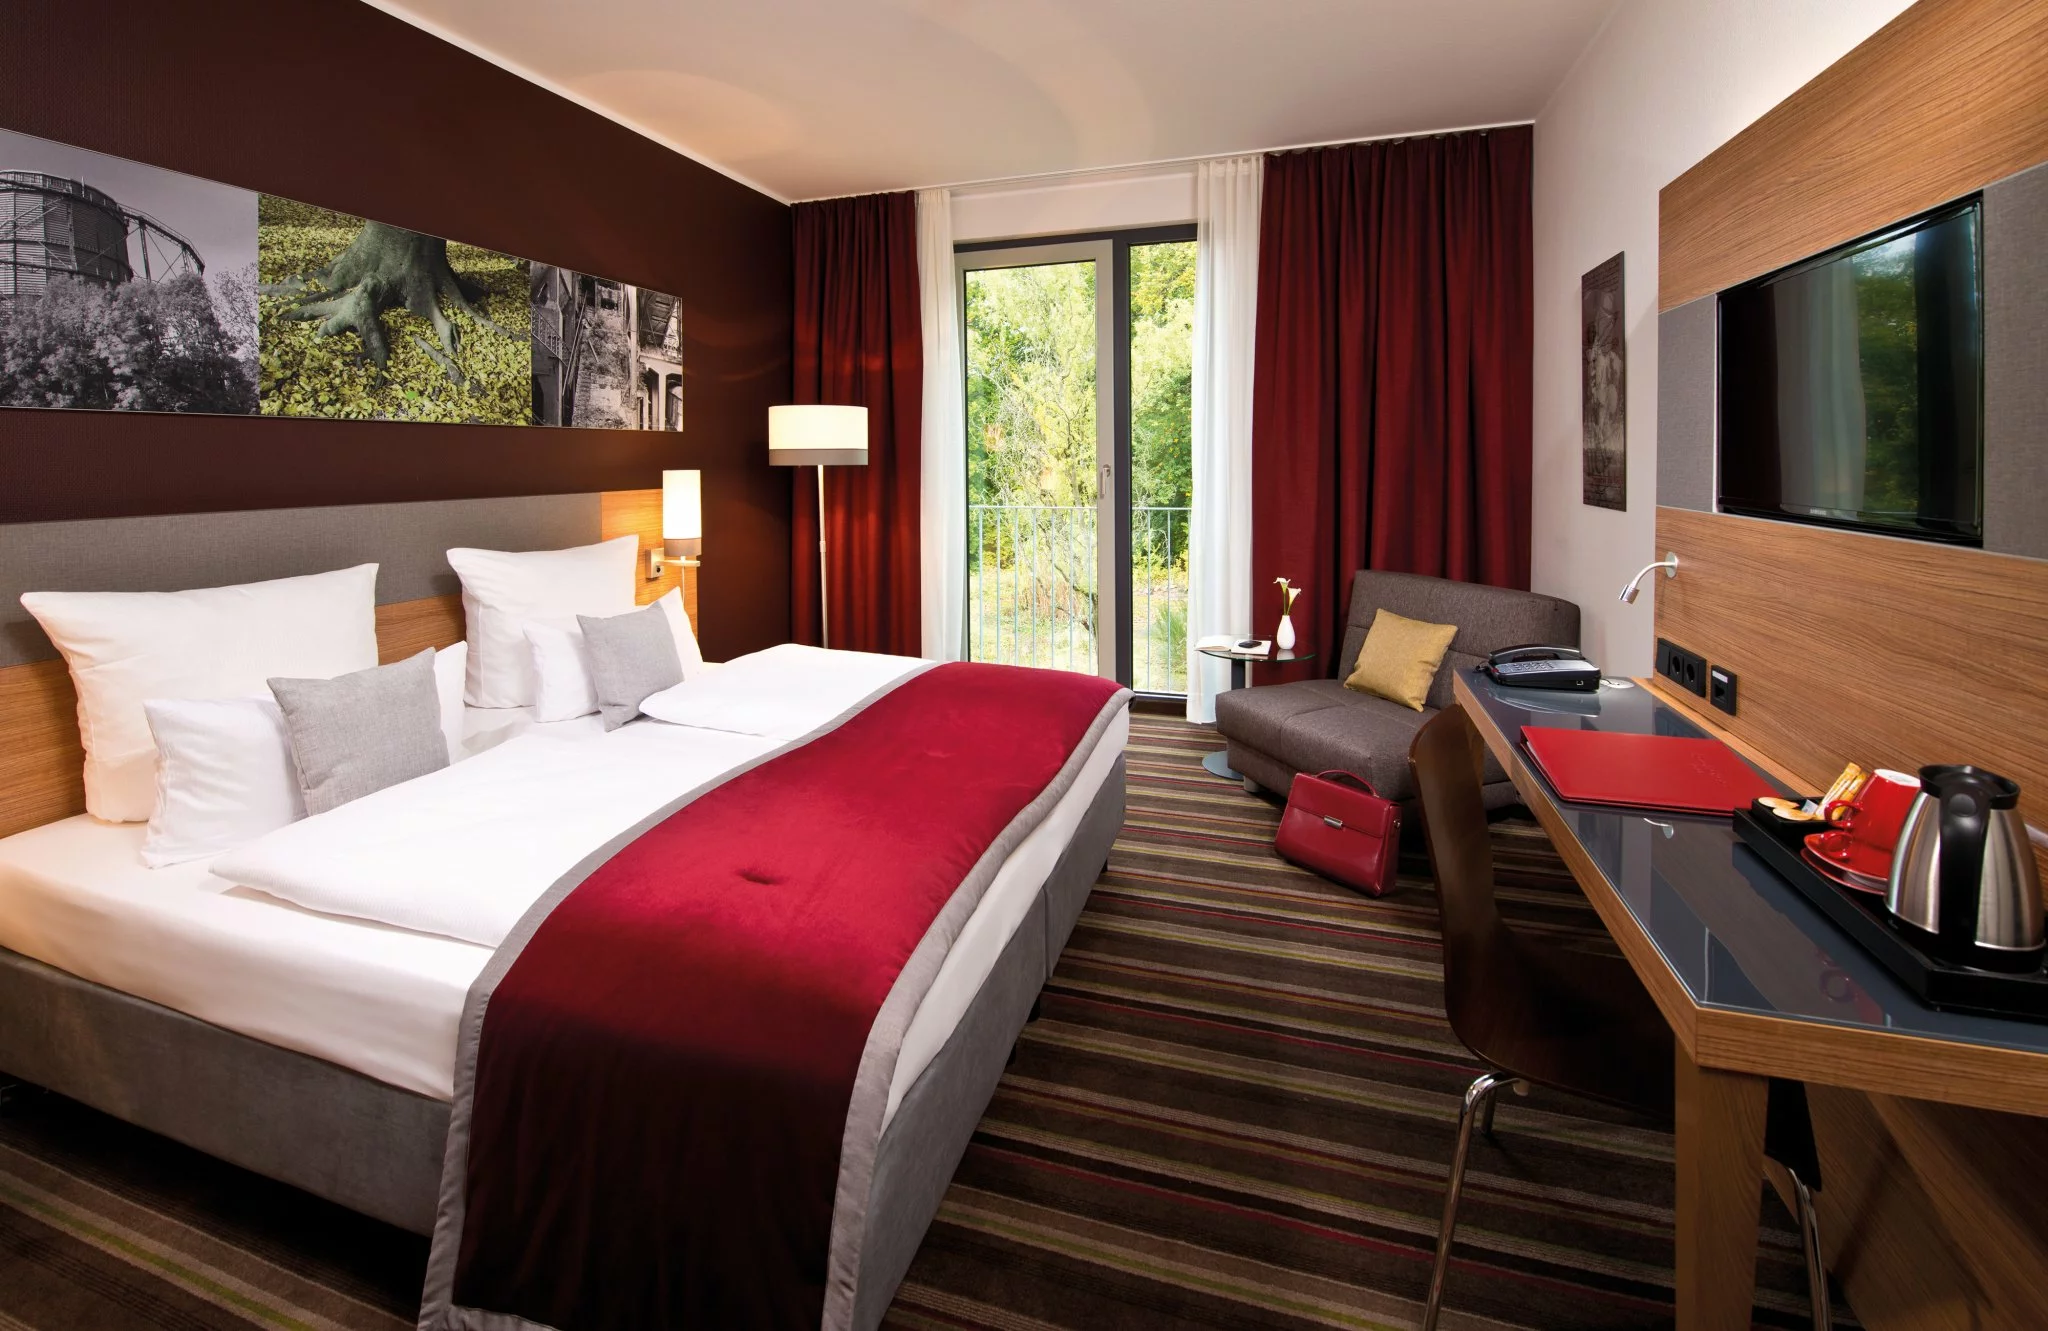 Leonardo Hotel Voelklingen-Saarbruecken - Comfort Room